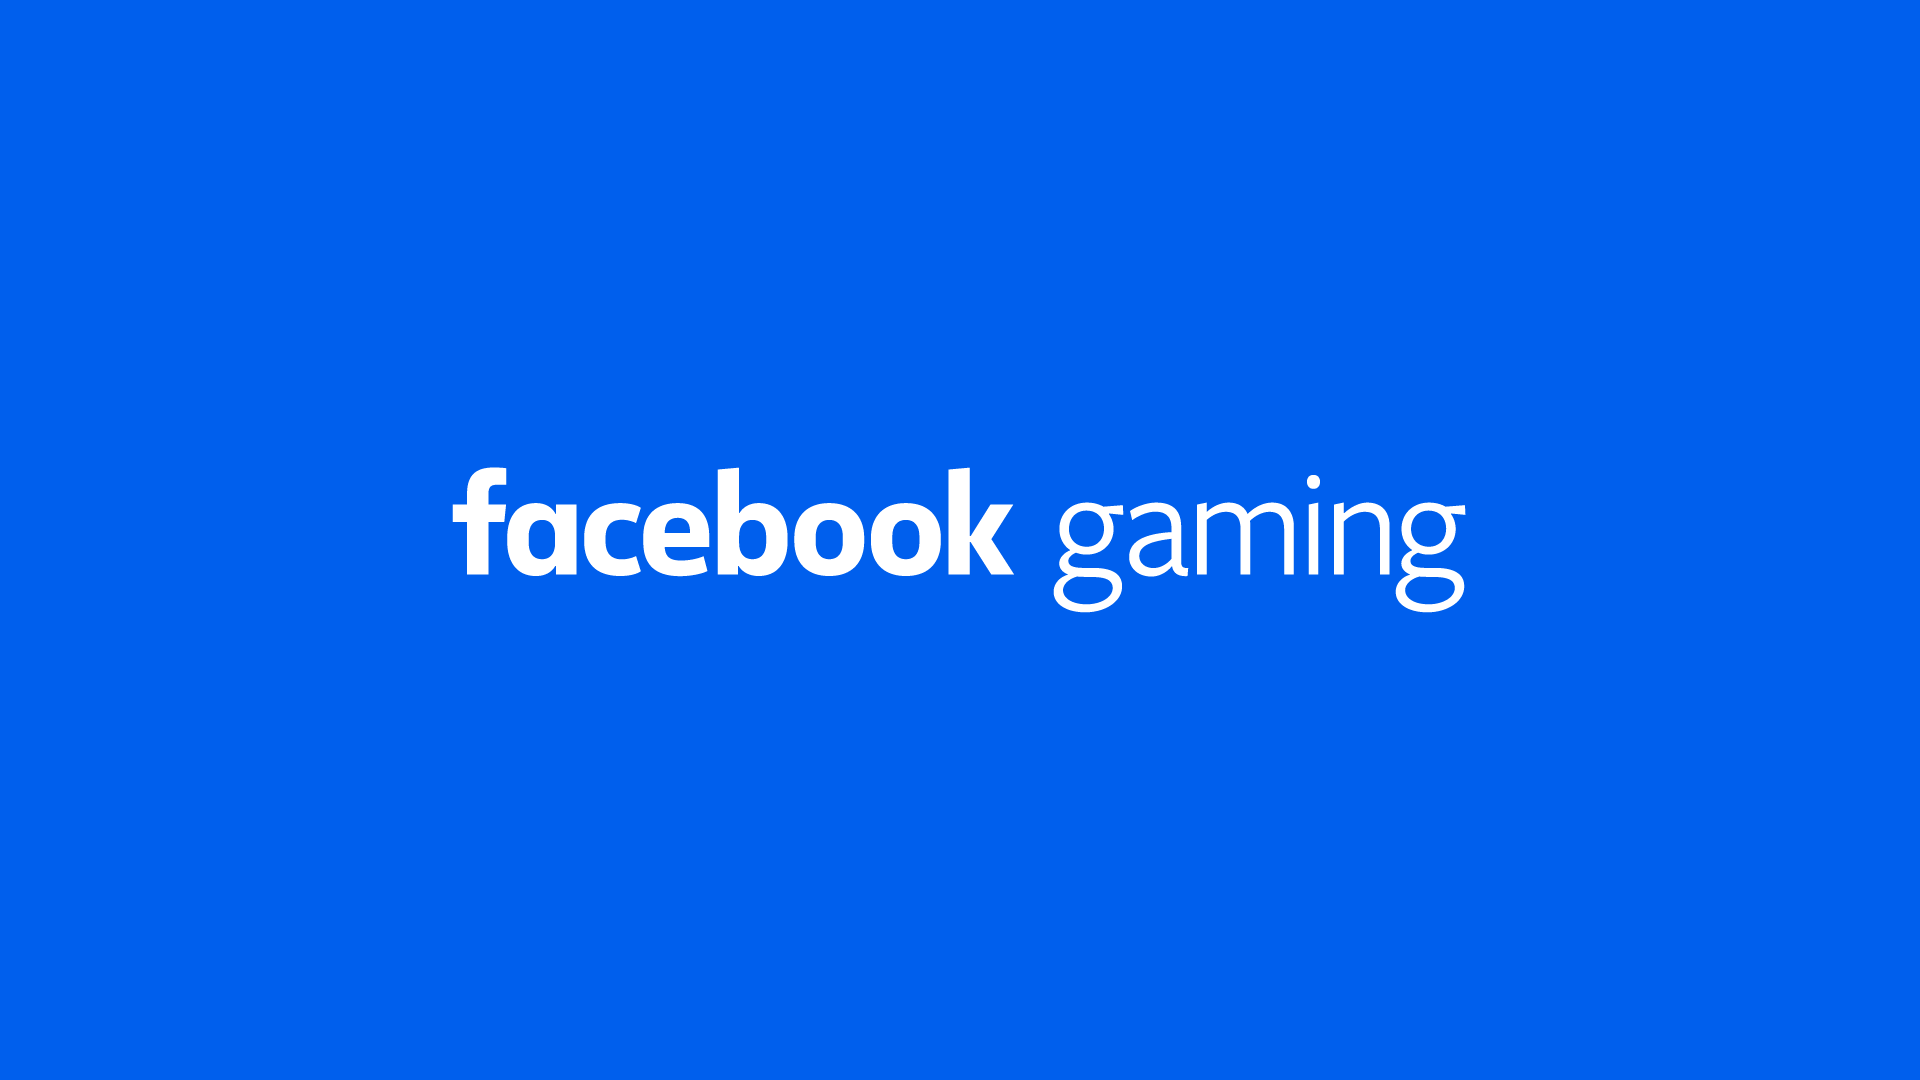 Facebook gaming: app lançado oficialmente | 5a07bbf5 facebook gaming | facebook | facebook gaming notícias